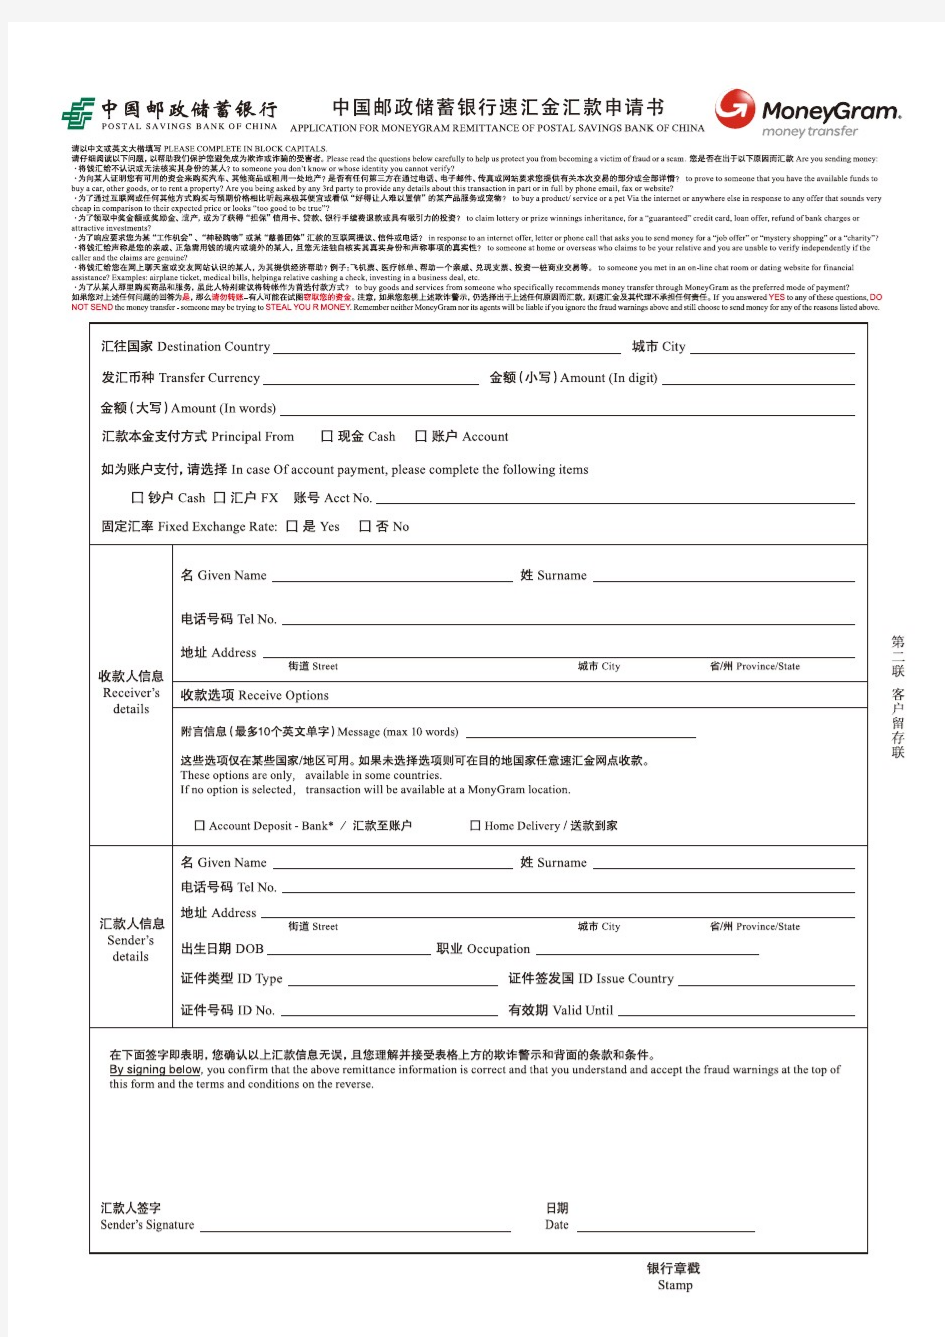 中国邮政储蓄银行速汇金汇款申请书